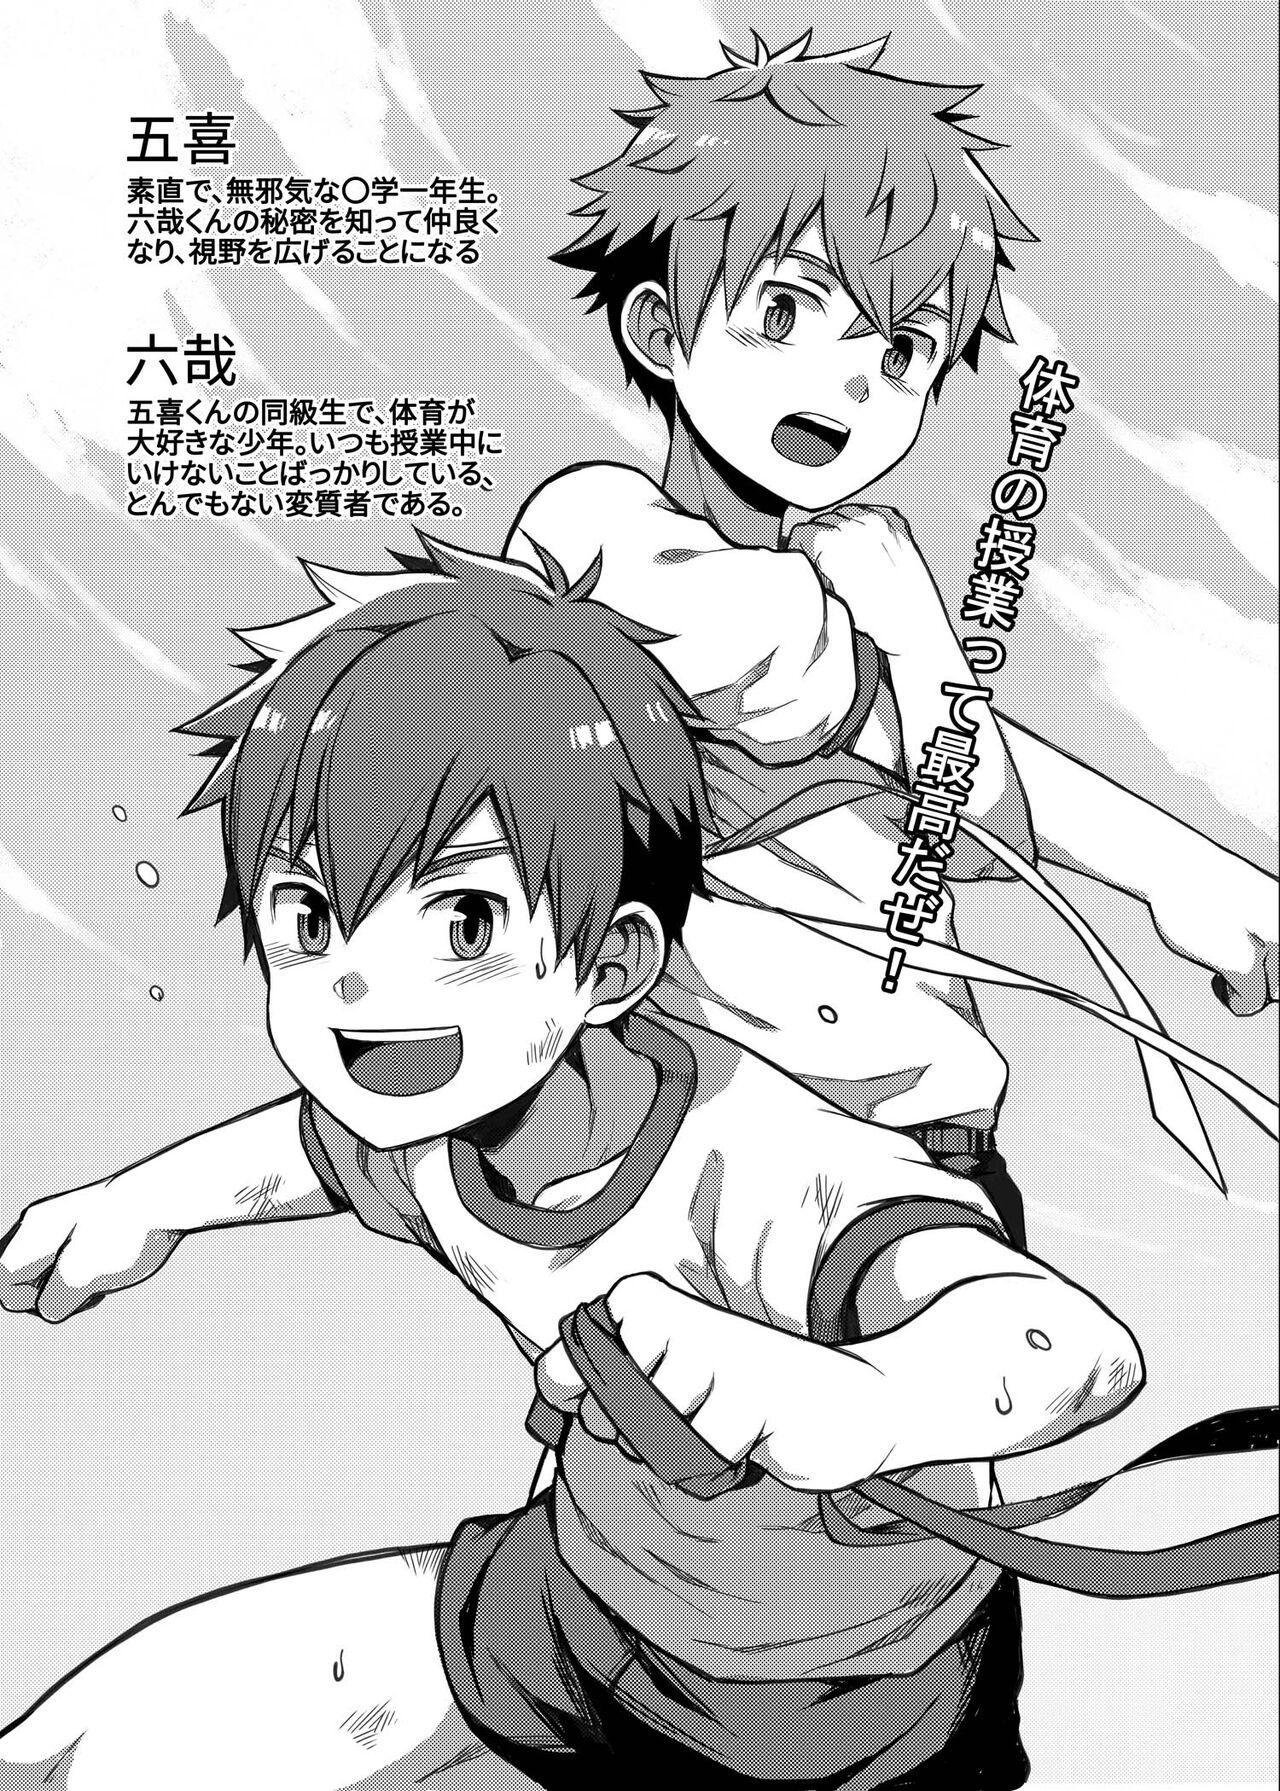 Threesome Taiiku Jugyou wa Saikou daze! - Physical Education is Awesome! - Original Argenta - Page 2